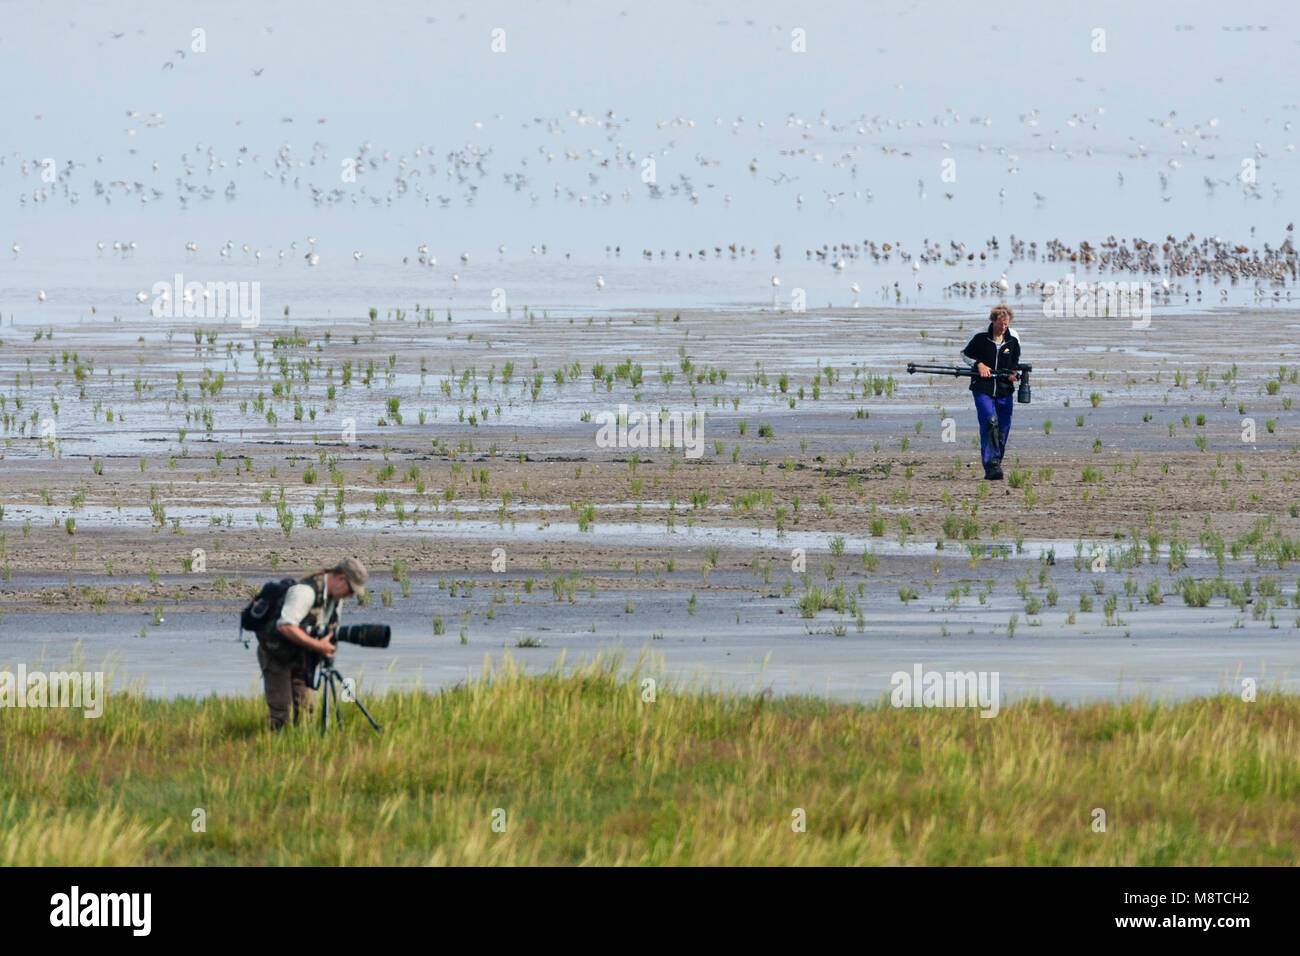 Vogelfotografen in actie op drooggevallen Wattenmeer; Vogel Fotografen in Aktion zu ausgetrocknet Wattenmeer Stockfoto